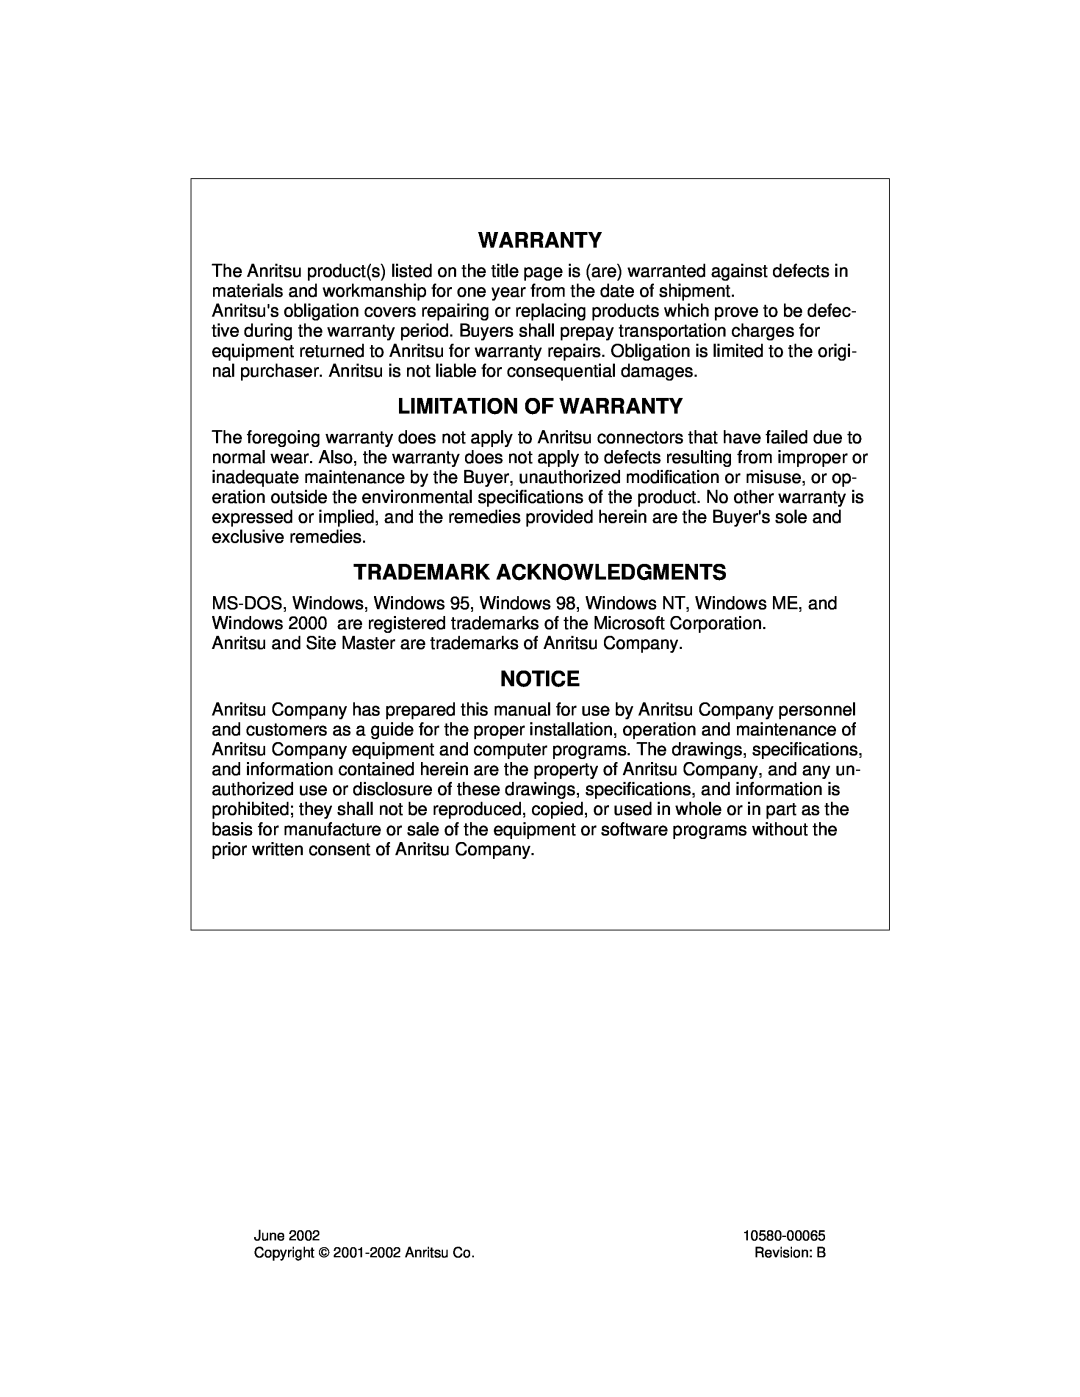 Anritsu S251C Limitation Of Warranty, Trademark Acknowledgments, June, 10580-00065, Copyright 2001-2002Anritsu Co 